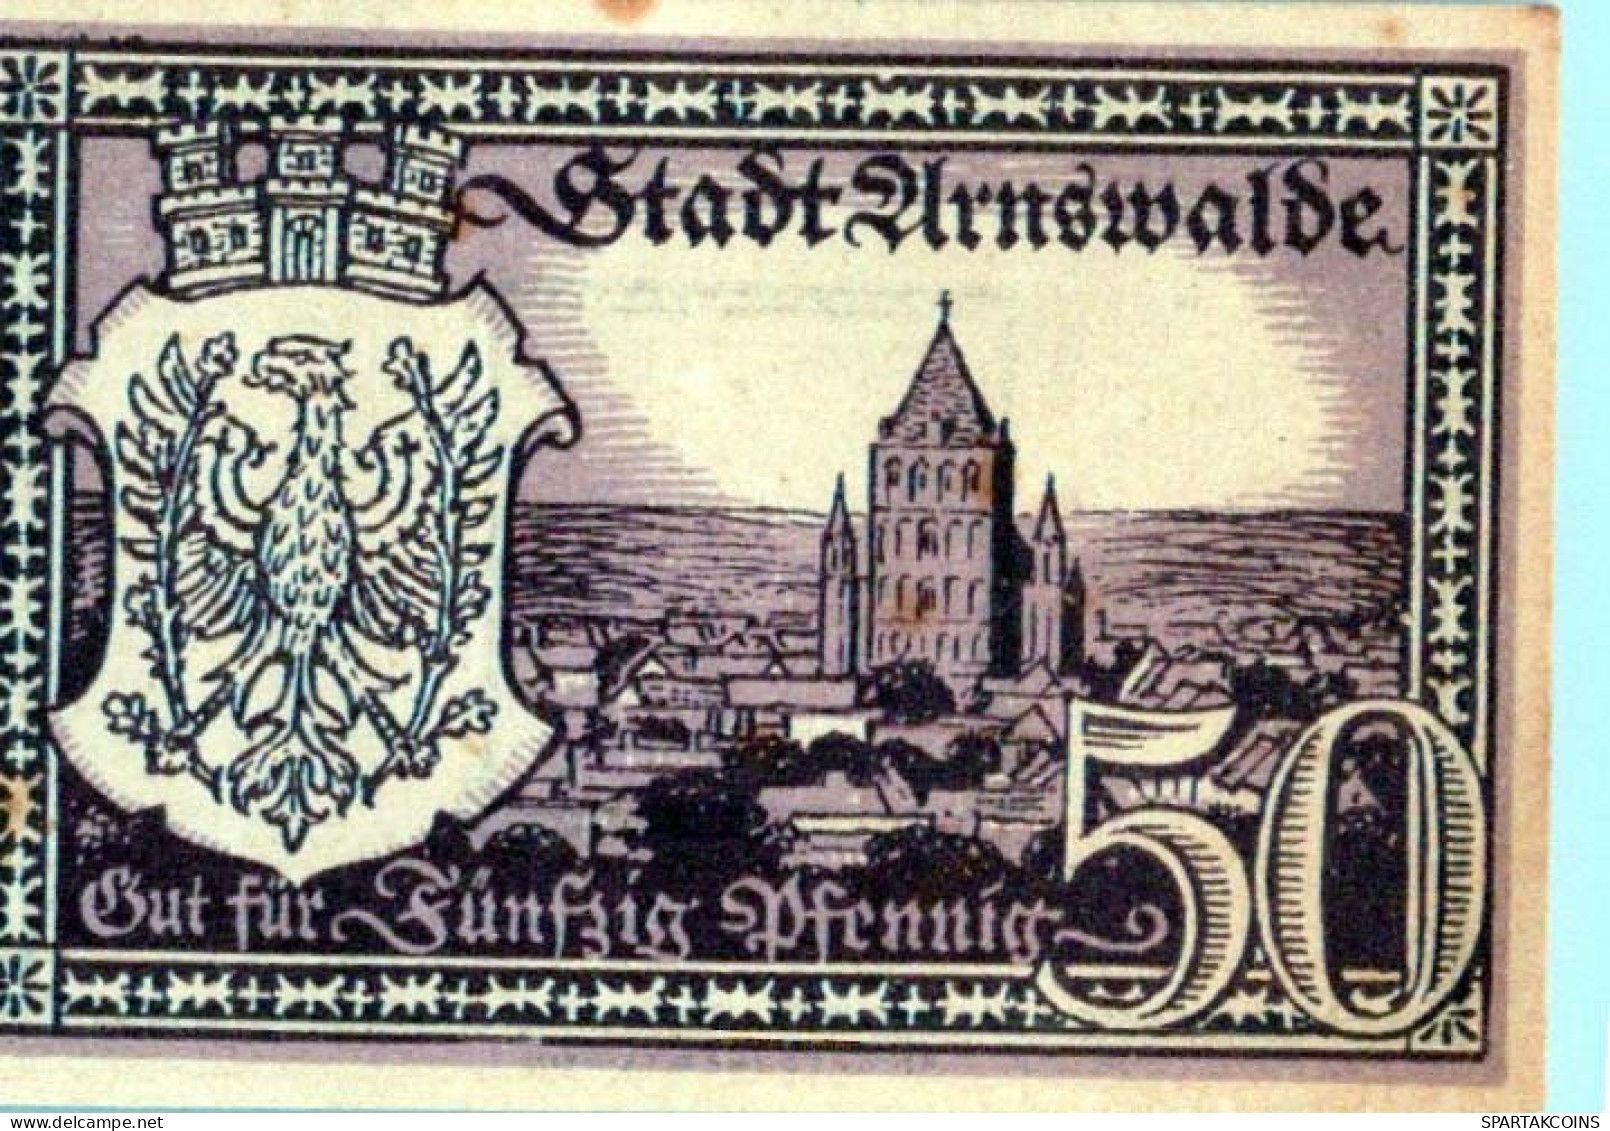 50 PFENNIG 1921 Stadt ARNSWALDE Brandenburg DEUTSCHLAND Notgeld Banknote #PI435 - [11] Local Banknote Issues